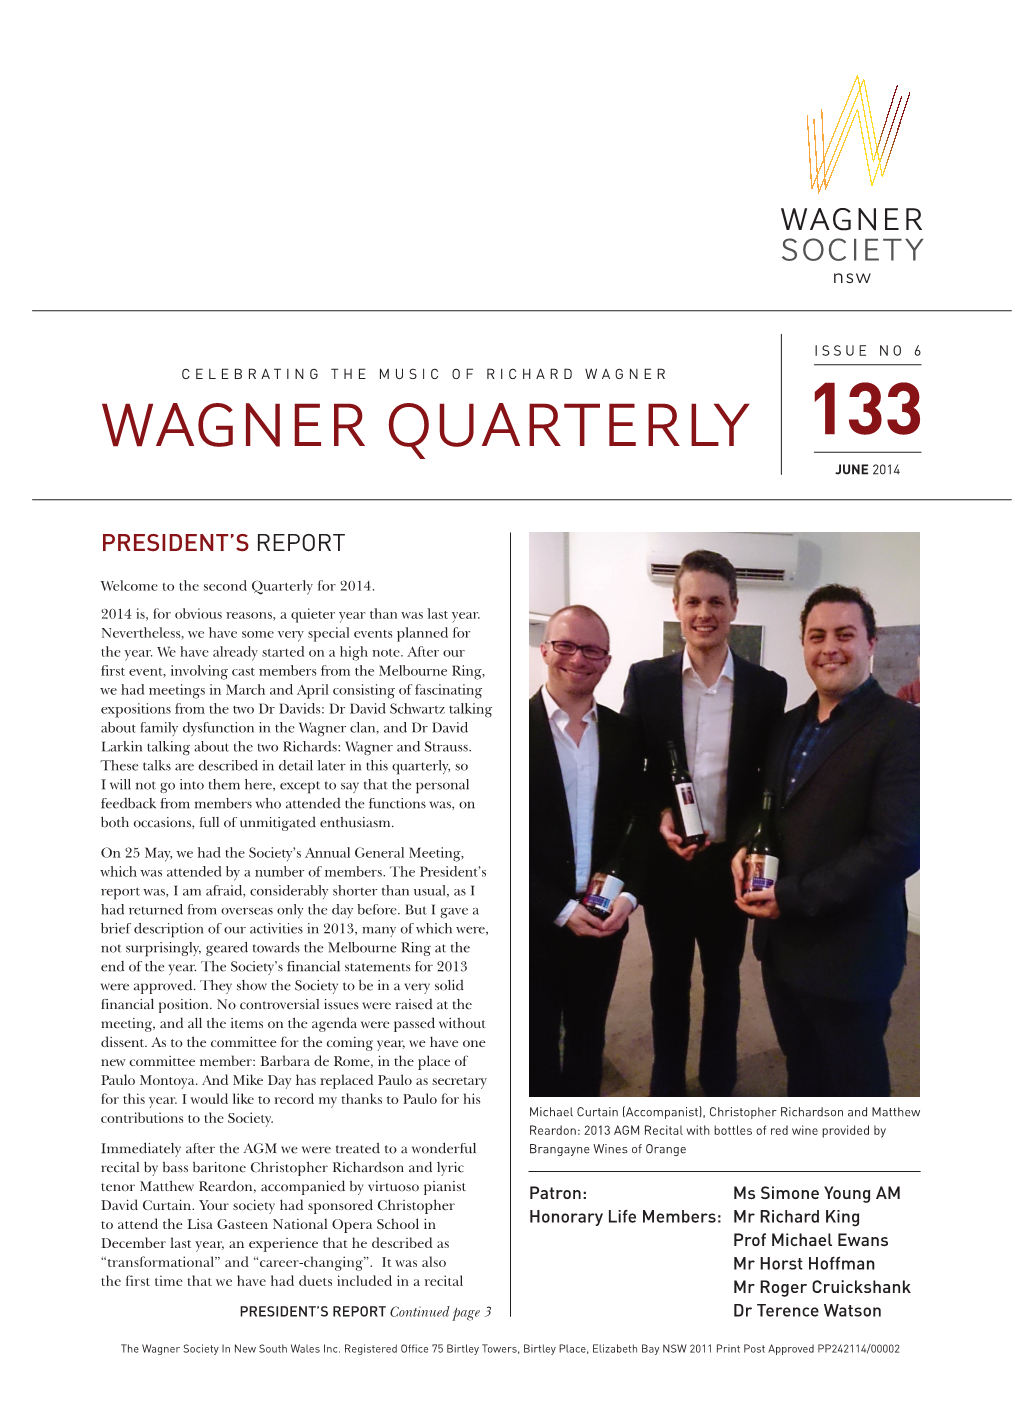 Wagner Quarterly 133, June 2014